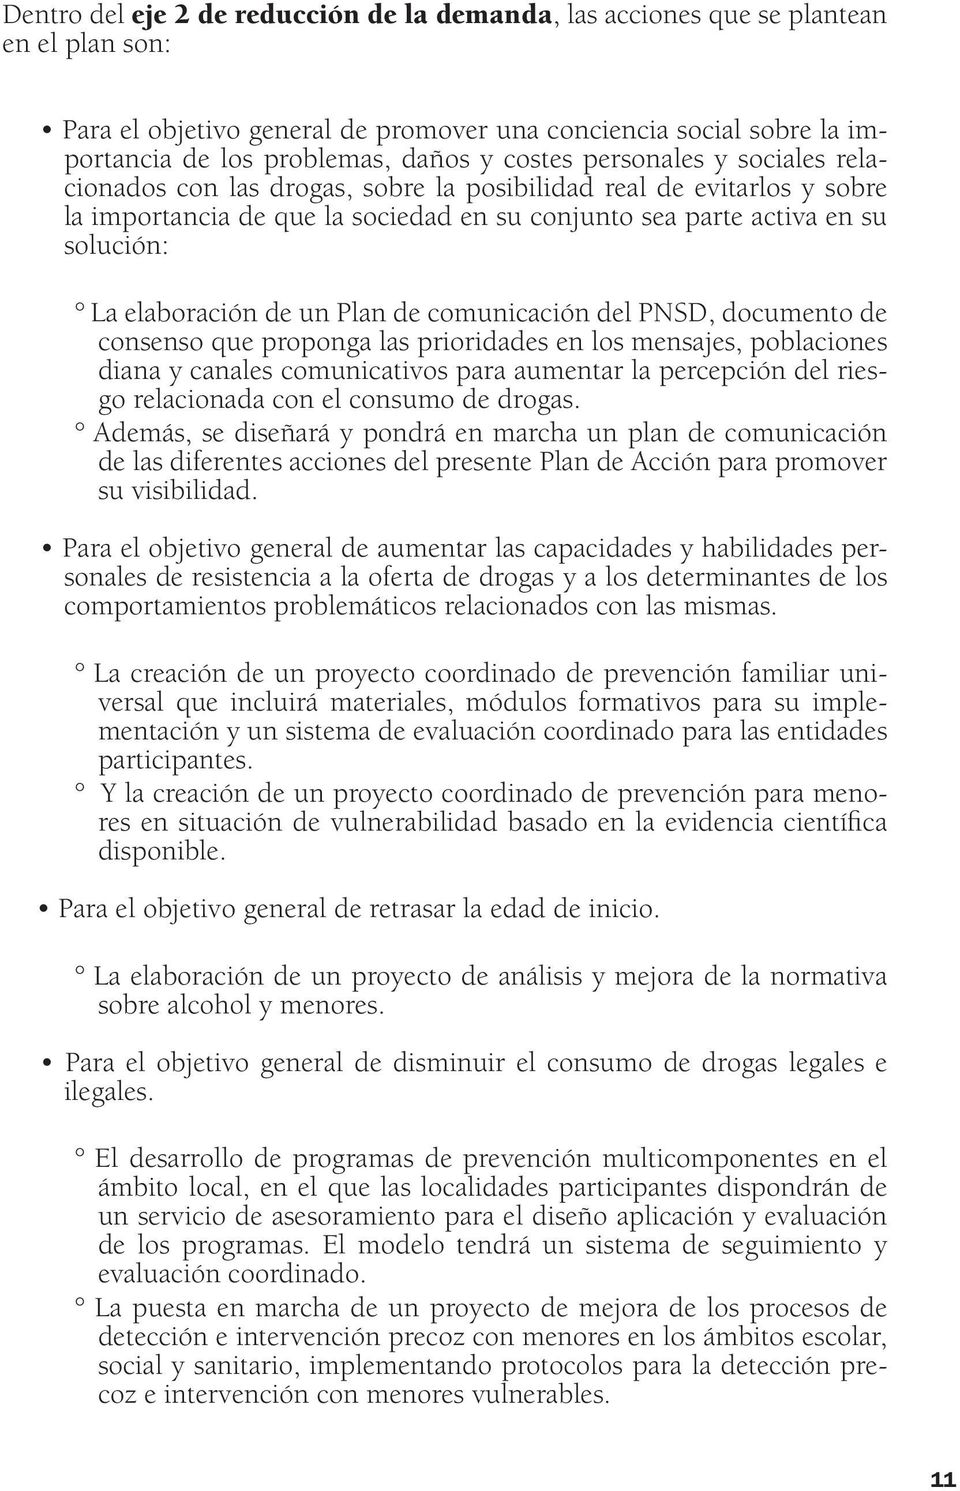 elaboración de un Plan de comunicación del PNSD, documento de consenso que proponga las prioridades en los mensajes, poblaciones diana y canales comunicativos para aumentar la percepción del riesgo